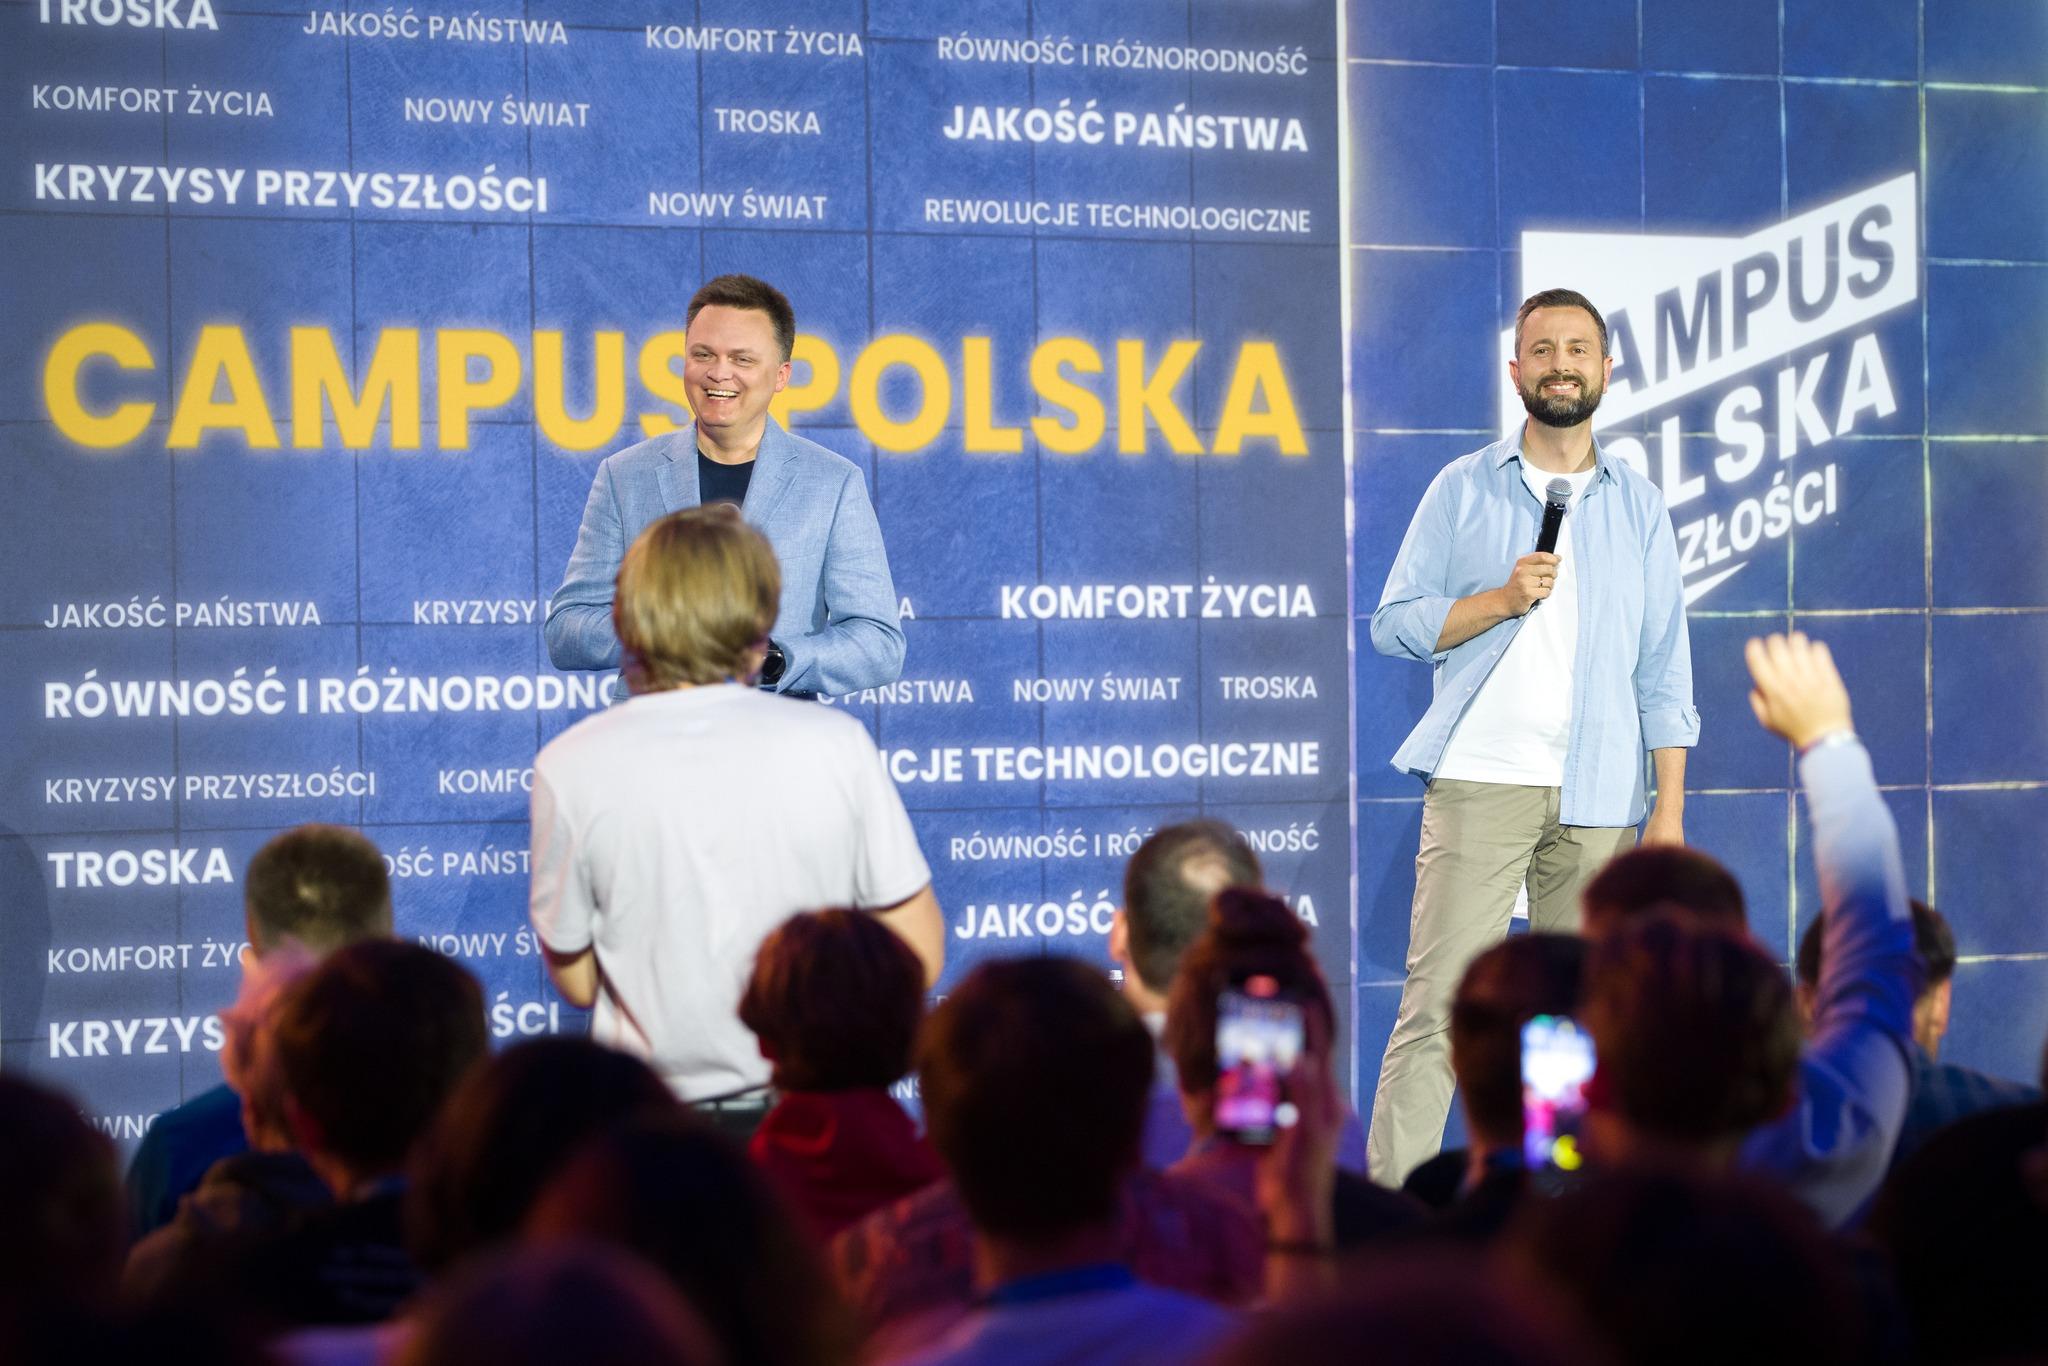 Szymon Hołownia i Władysław Kosiniak-Kamysz stoją na scenie podczas debaty na Campusie Polska Przyszłości. Jeden z widzów zadaje pytanie